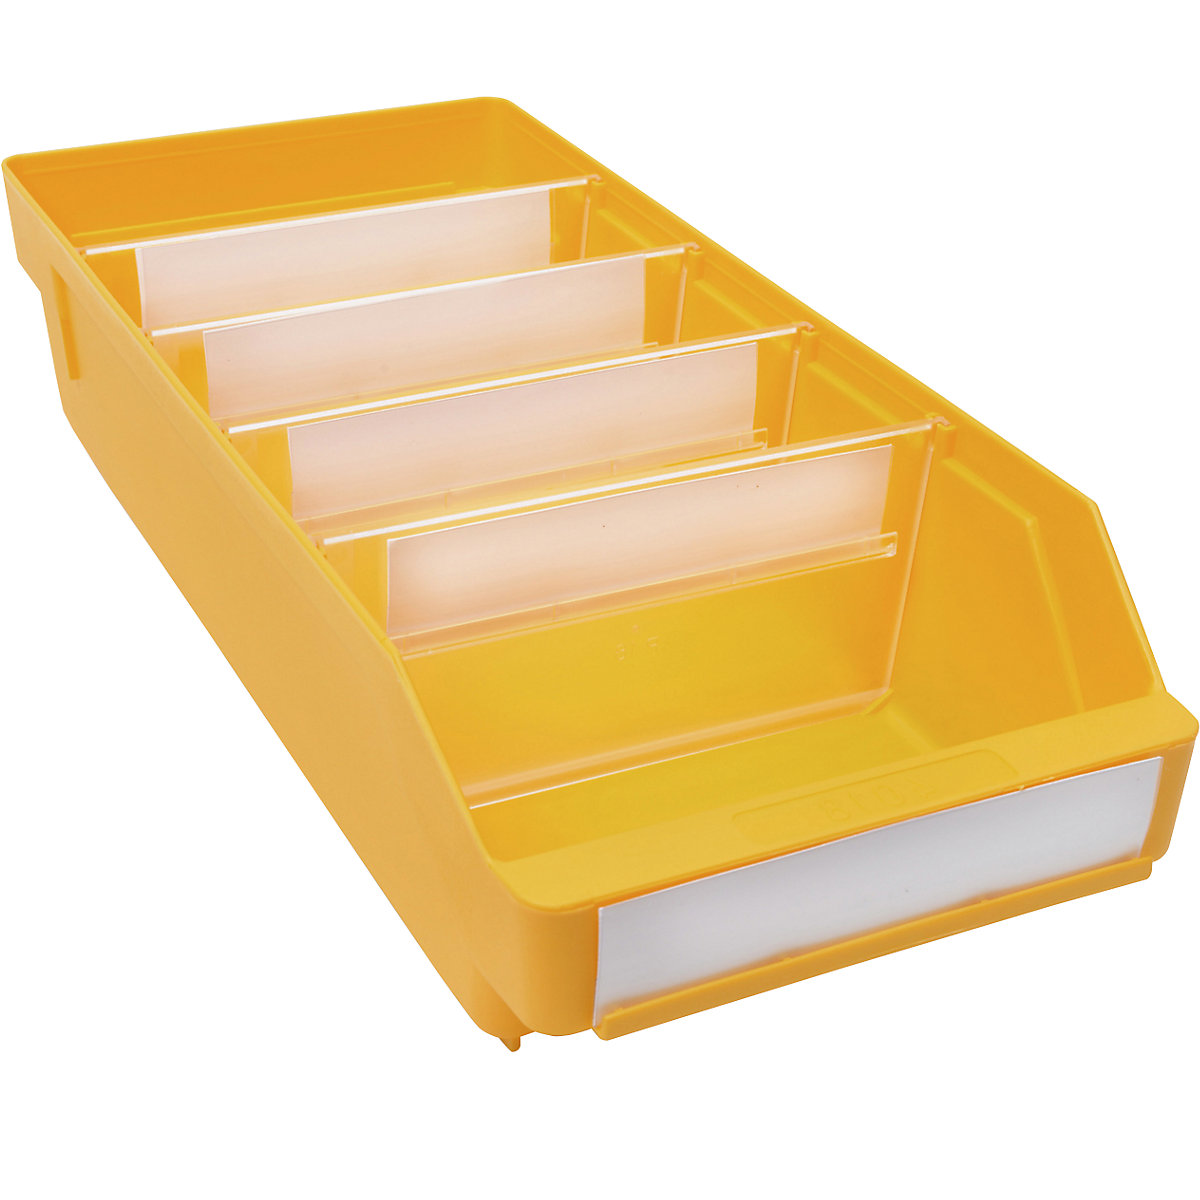 Bac de stockage en polypropylène résistant aux chocs – STEMO, coloris jaune, L x l x h 400 x 180 x 95 mm, lot de 20-17